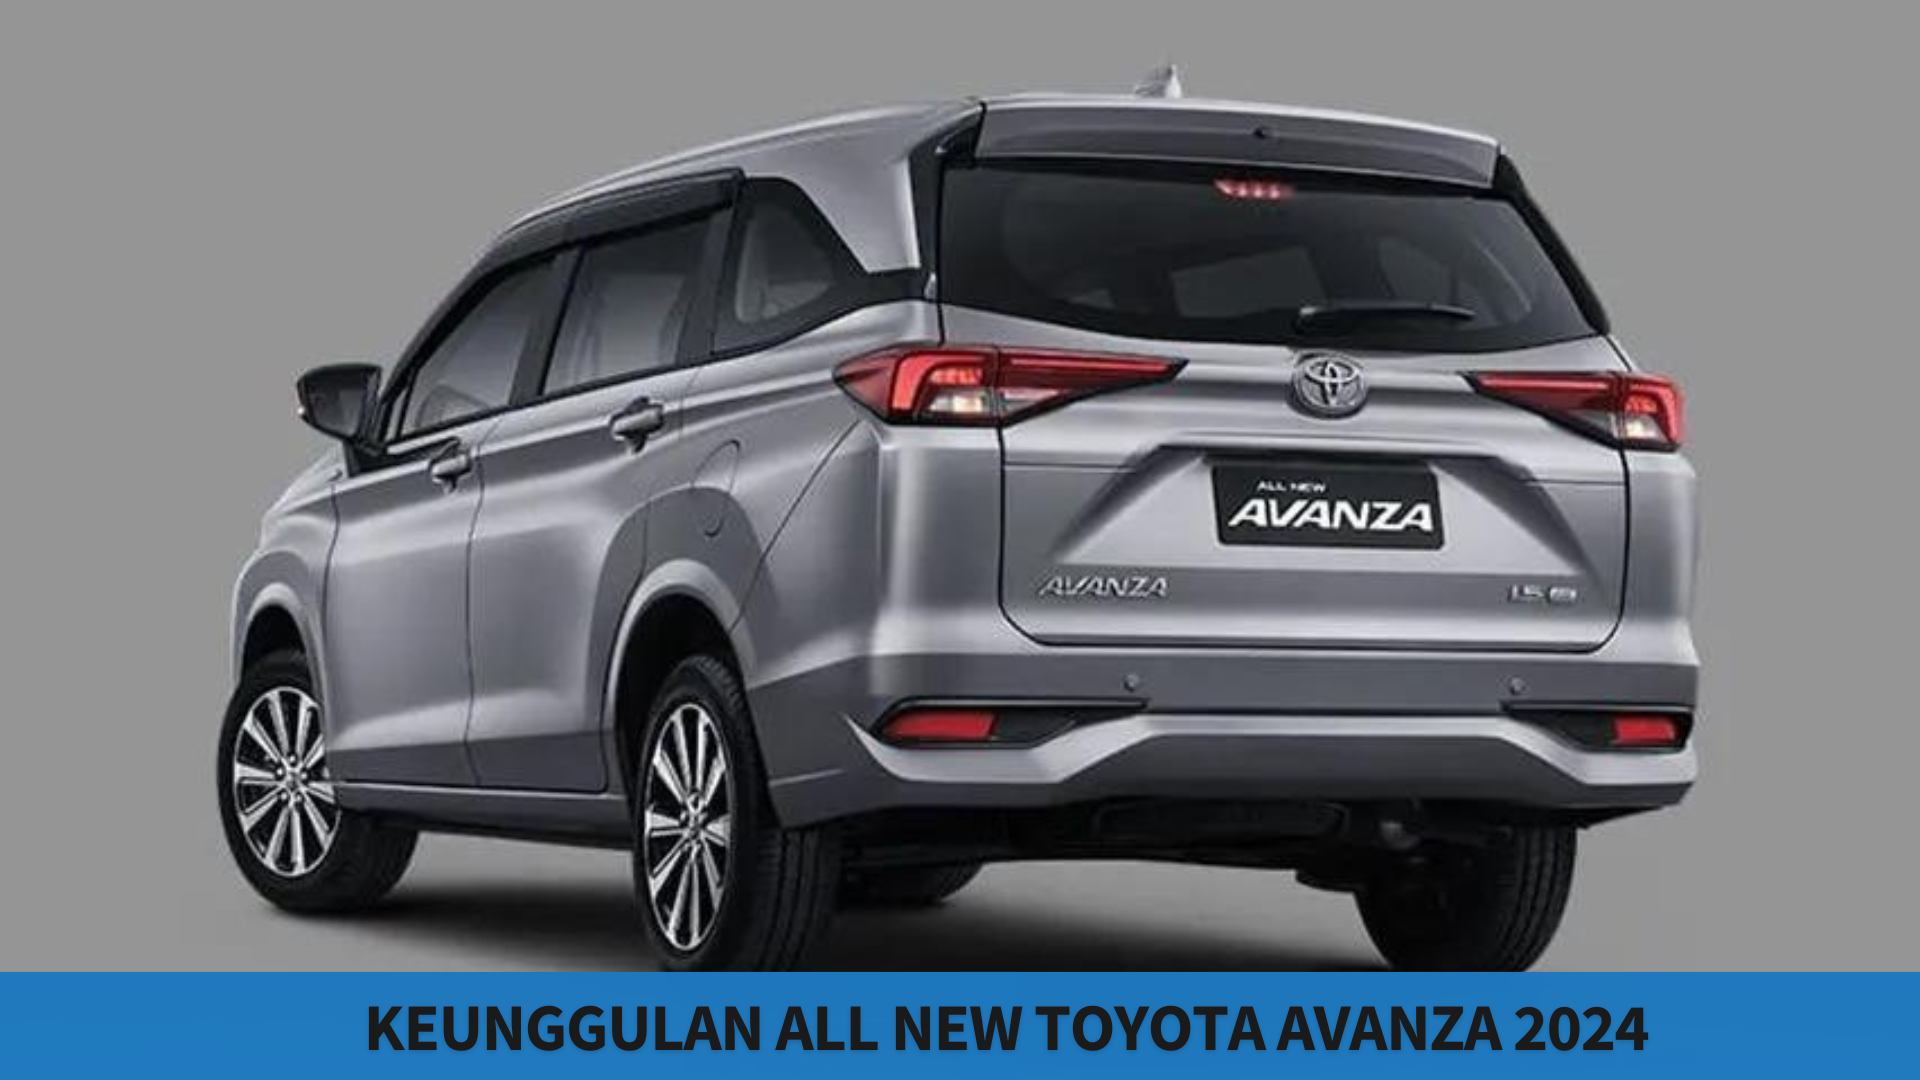 Keunggulan All New Toyota Avanza 2024, Pilihan Mobil Keluarga dengan Tampilan Desain yang Lebih Segar 